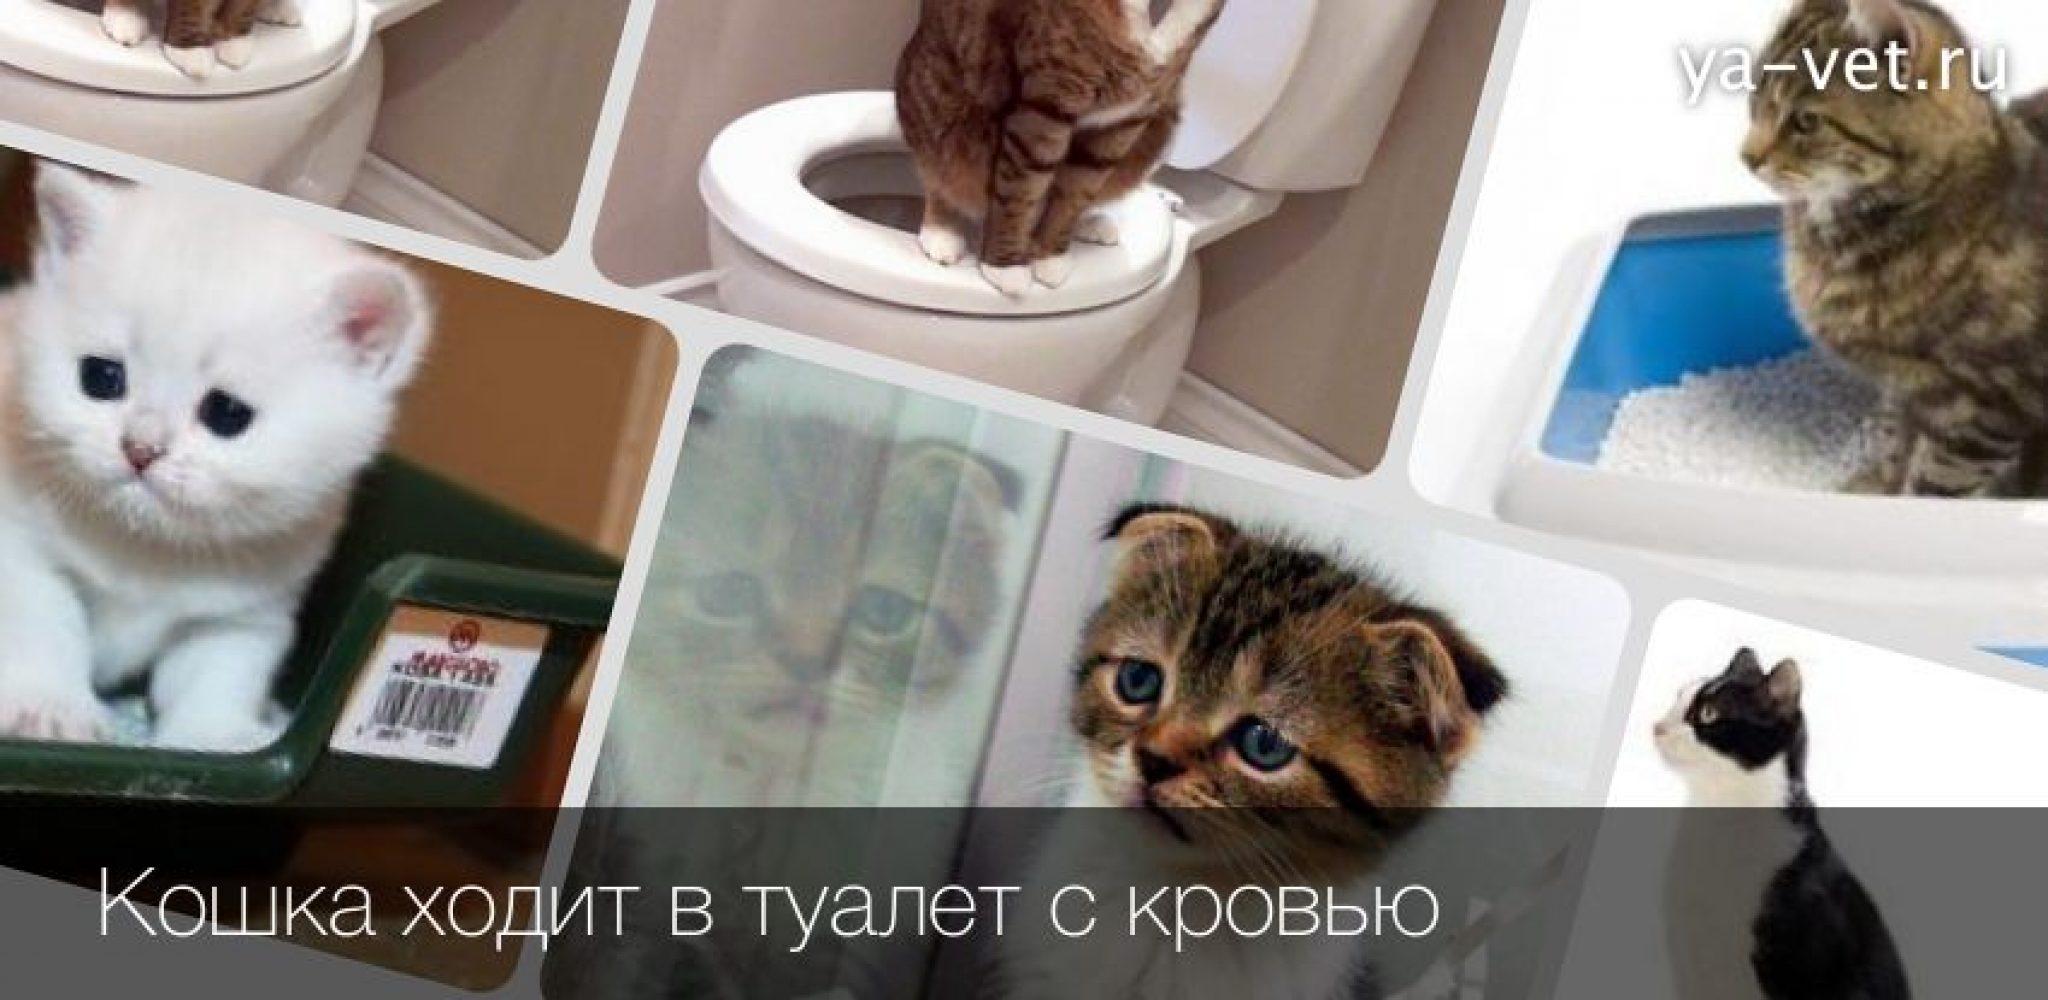 Как помочь котенку сходить в туалет. Кошка ходит в туалет с кровью.